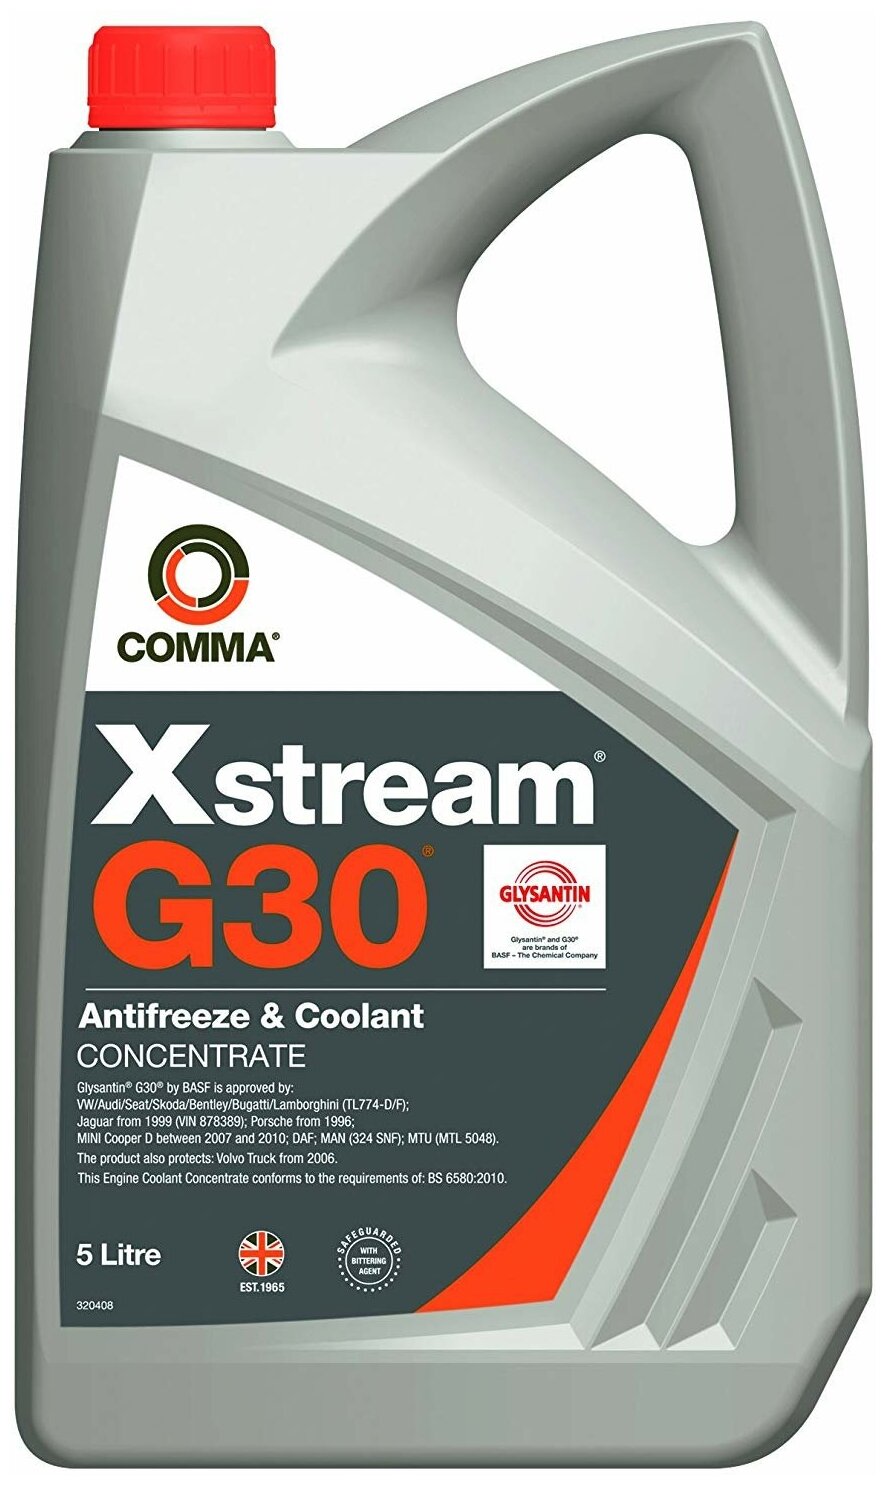 Comma Xstream G30 Af Conc G12+ (2L)_Антифриз! Красн, Концентратvw, Audi, Man 324, Mb 325.5, Bs-6580-2010 COMMA арт. XSR2L